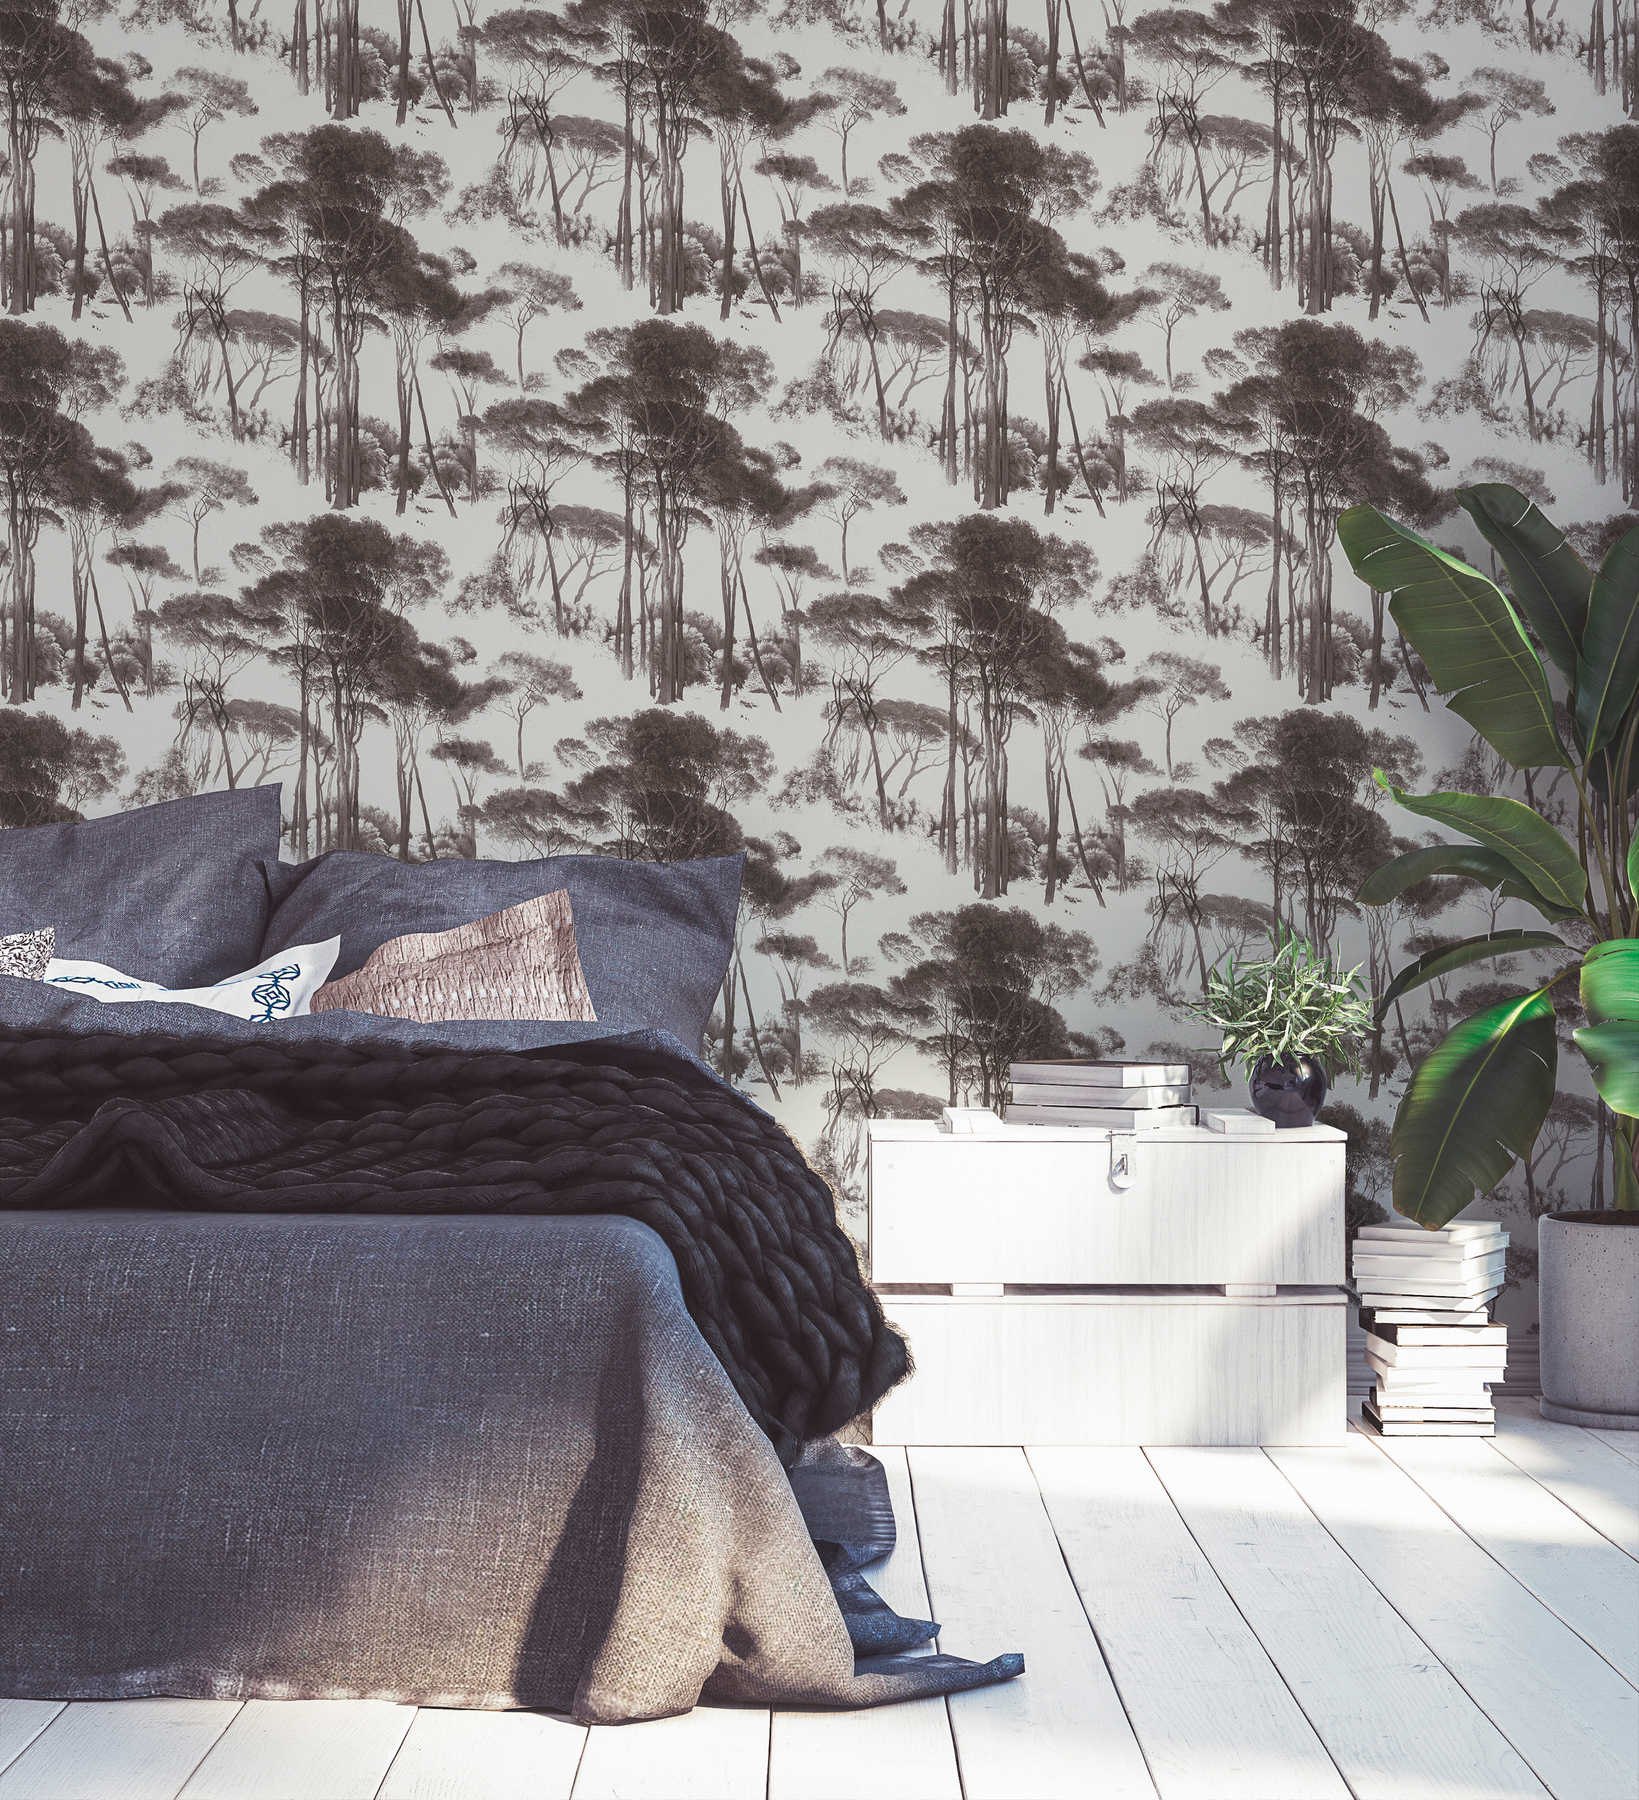             Papel pintado histórico de tejido no tejido con motivo de paisaje - negro, blanco
        